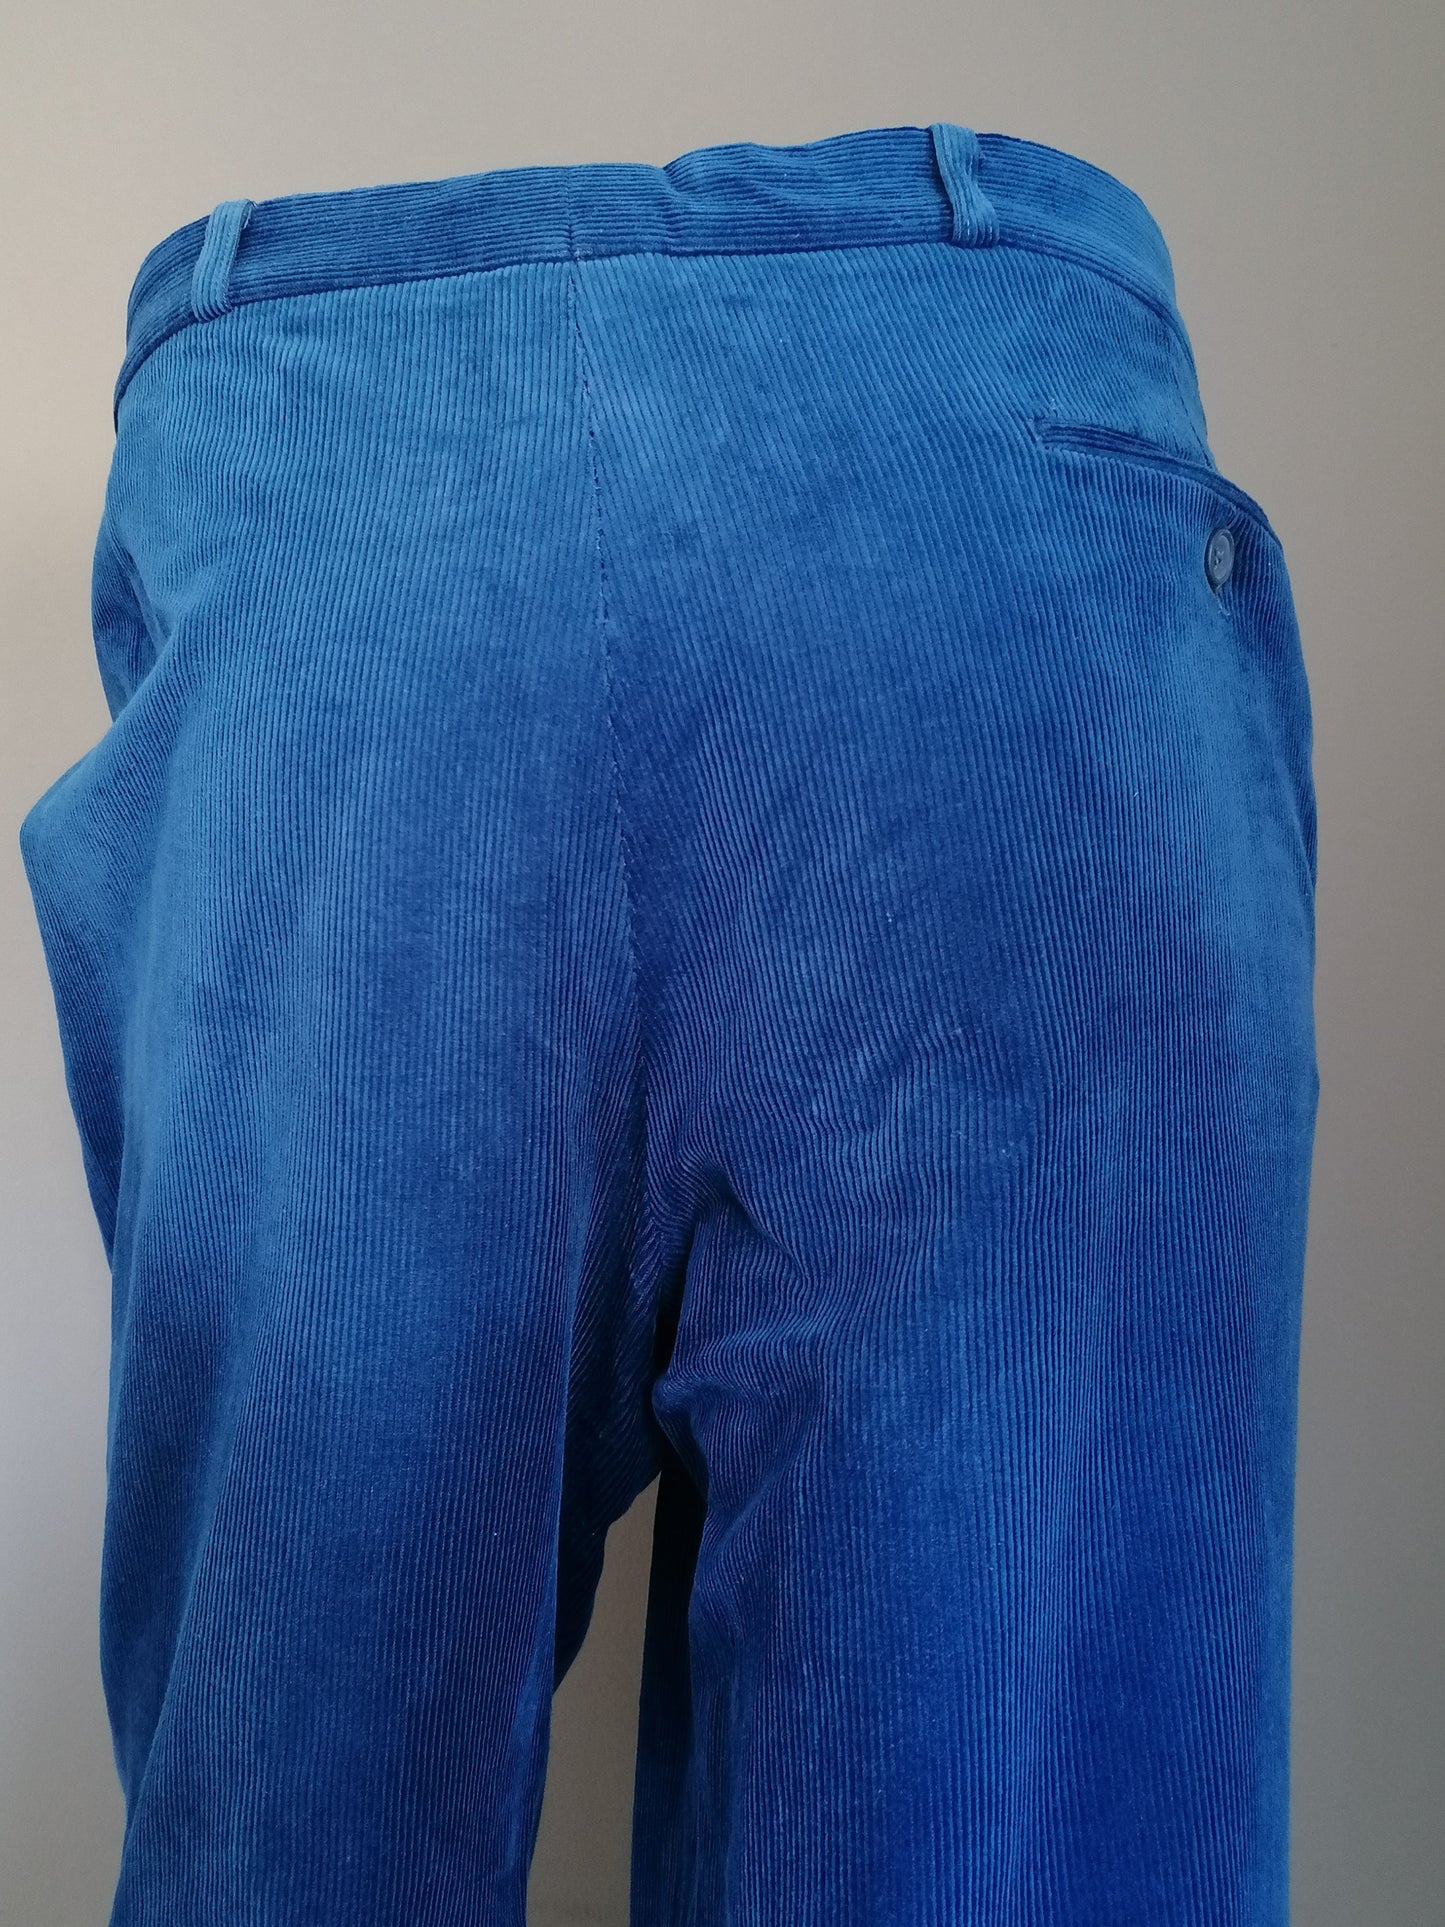 Pantalons / pantalons de côtes étirés du confort. Couleur bleue. Taille 27 (54 / L)